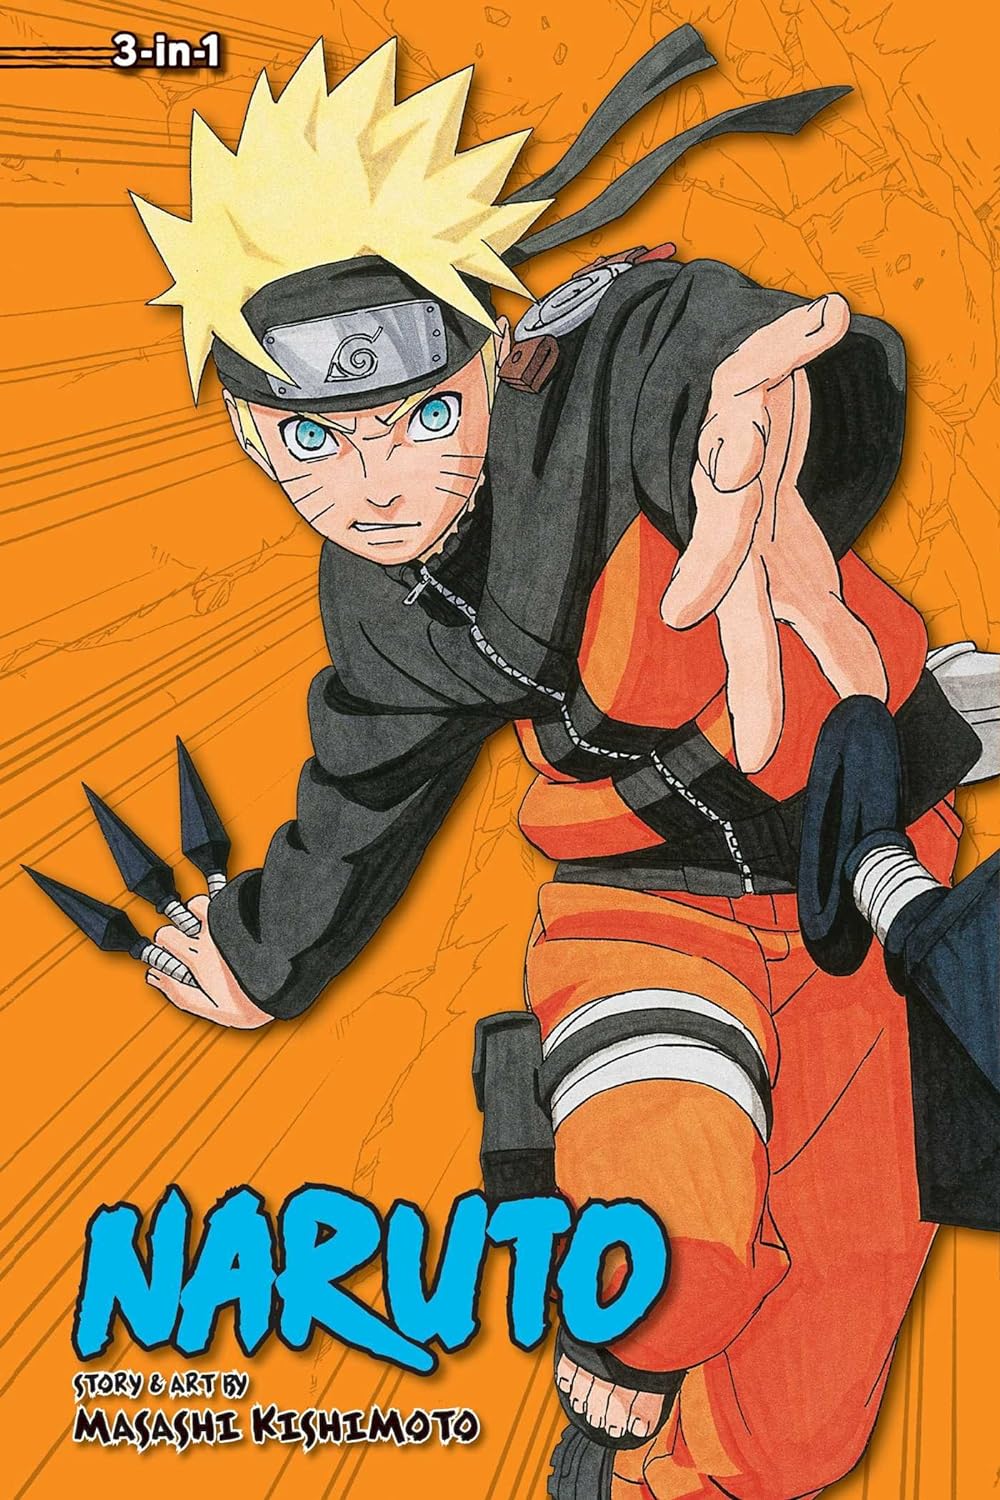 Naruto (3-in-1 Edition) Vol. 10 (Vol. 28, 29 & 30)